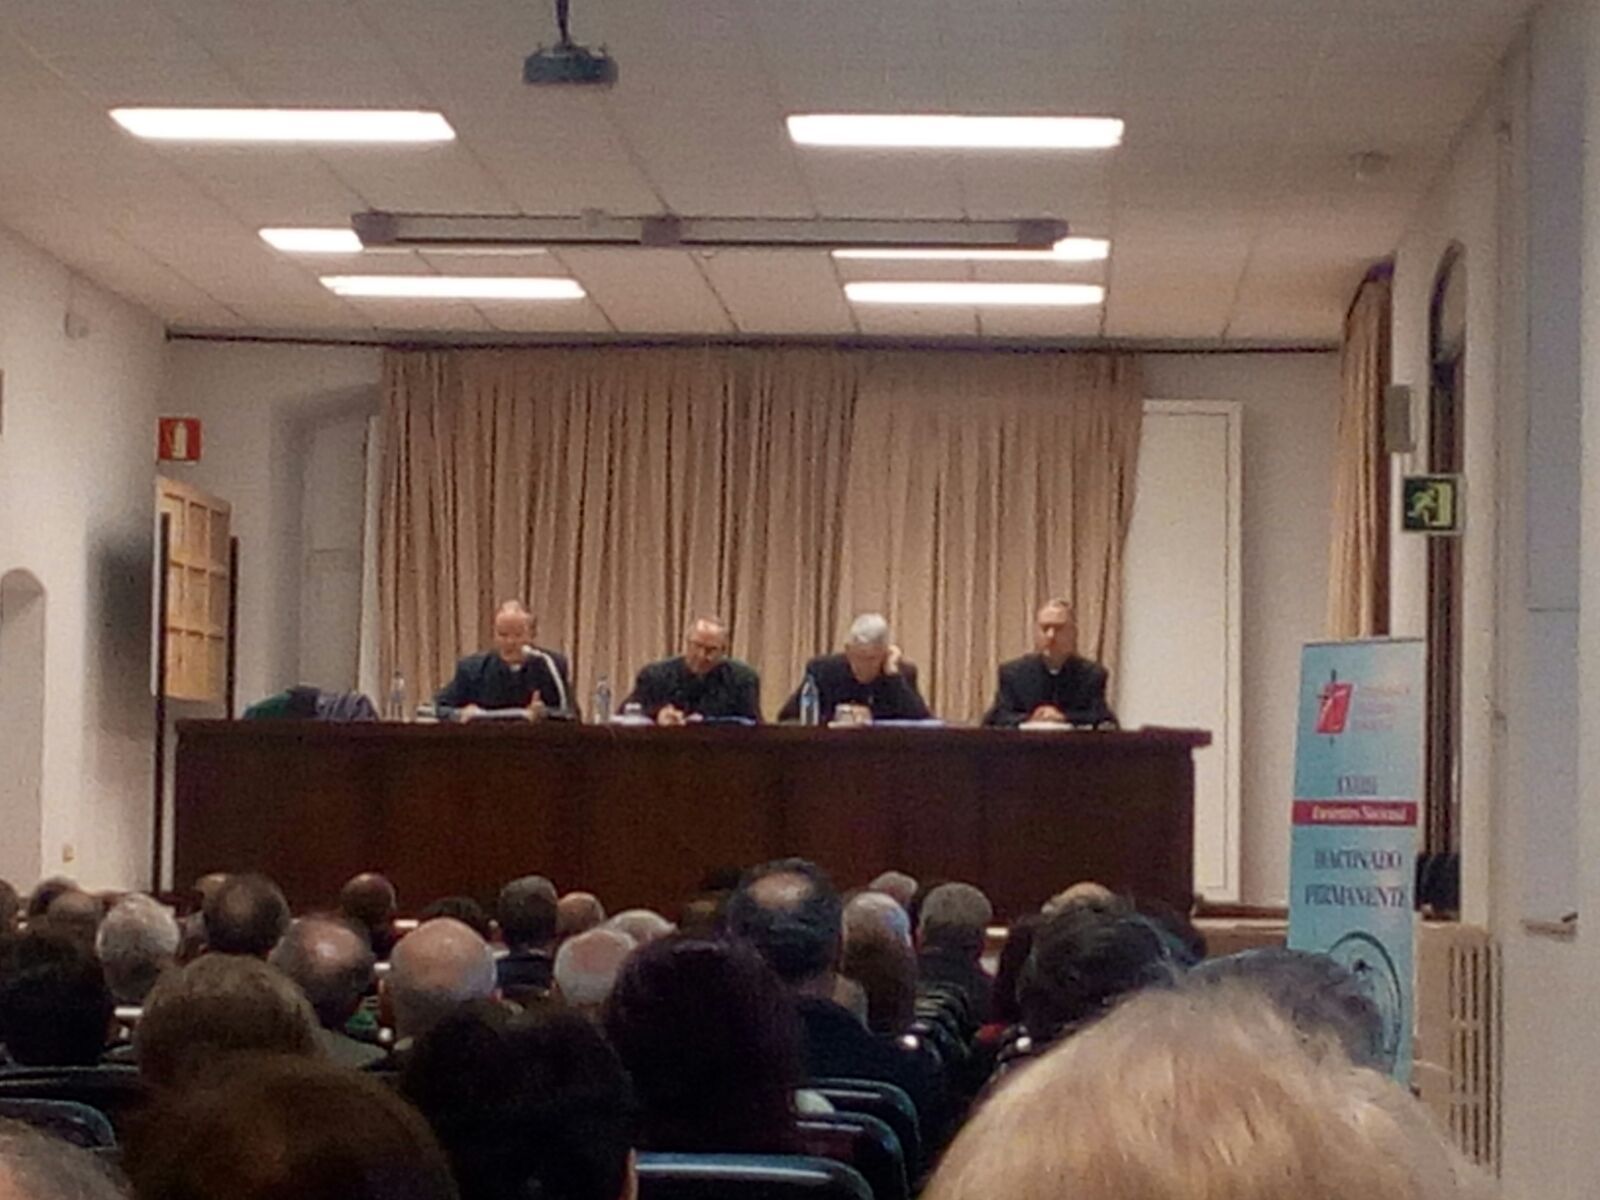 XXXII Encuentro nacional del Diaconado Permanente de España, día segundo, mañana (7 de diciembre)